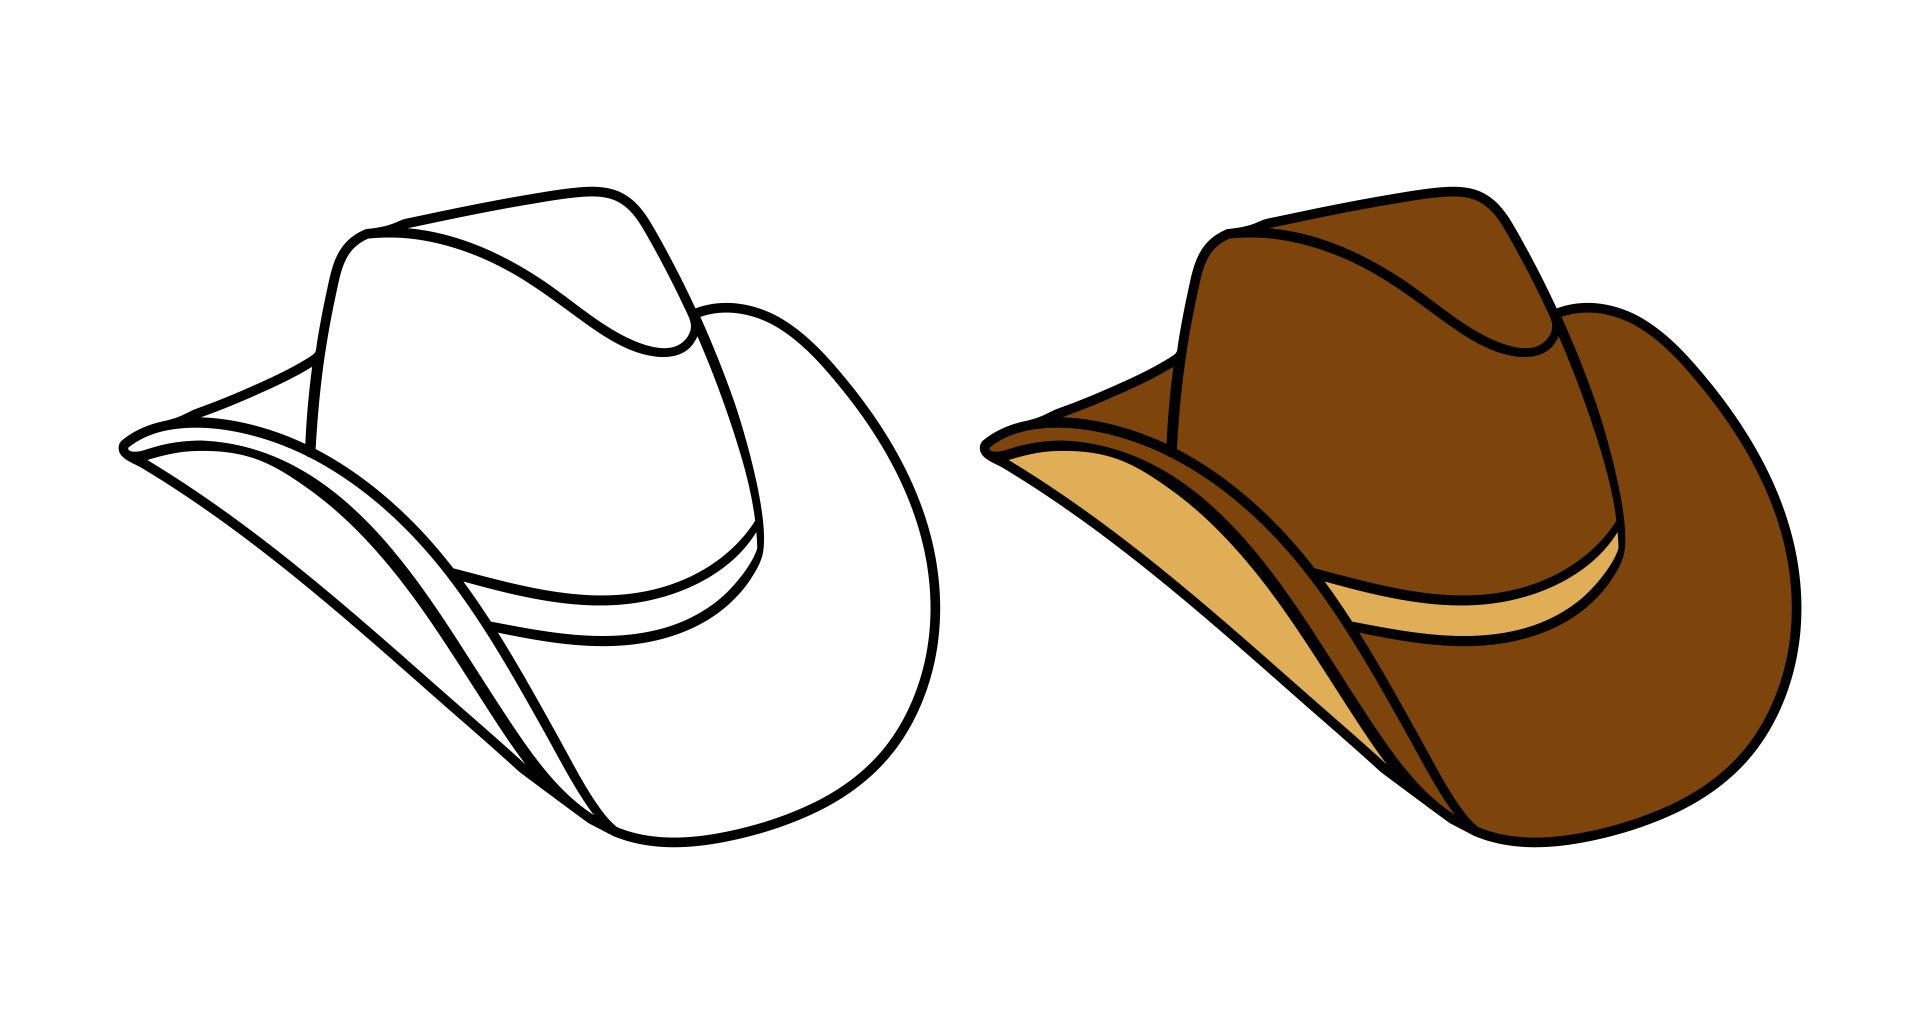 Cowboy Hat Applique Design